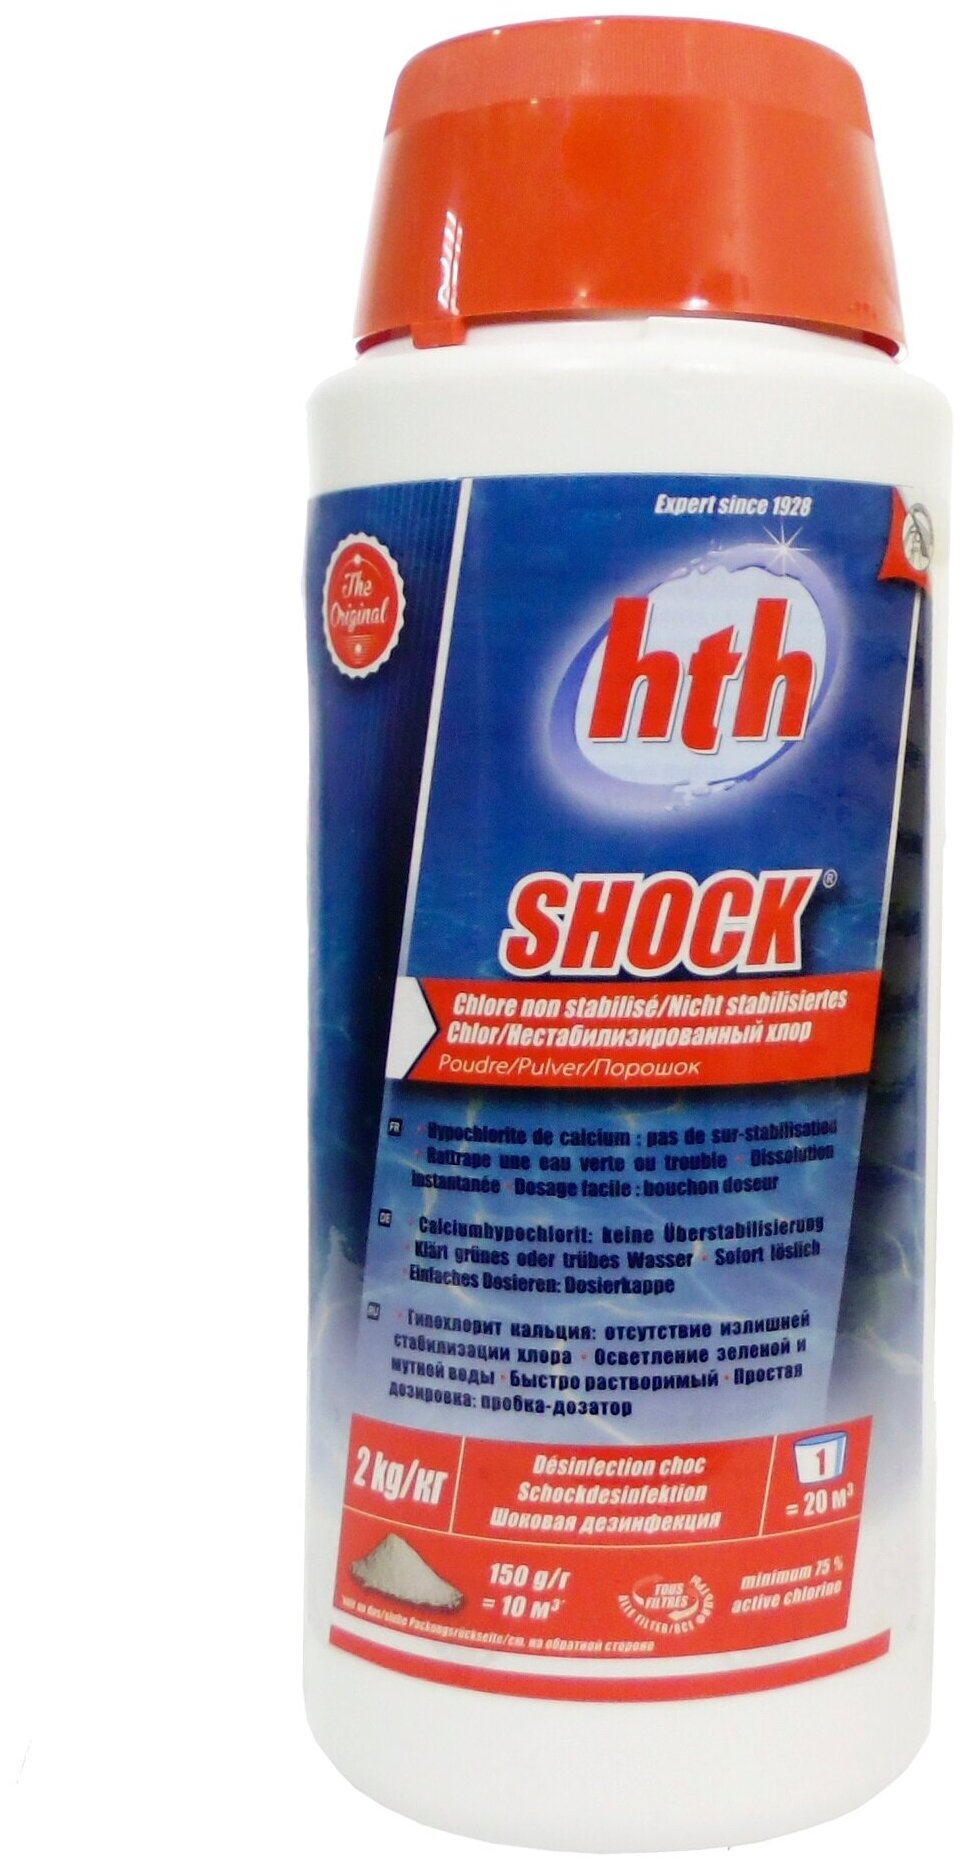 Порошок-шок для бассейна "SHOCK" hth (Франция) 2 кг. порошок для бассейна хлорка порошок шок для бассейна химия для бассейна